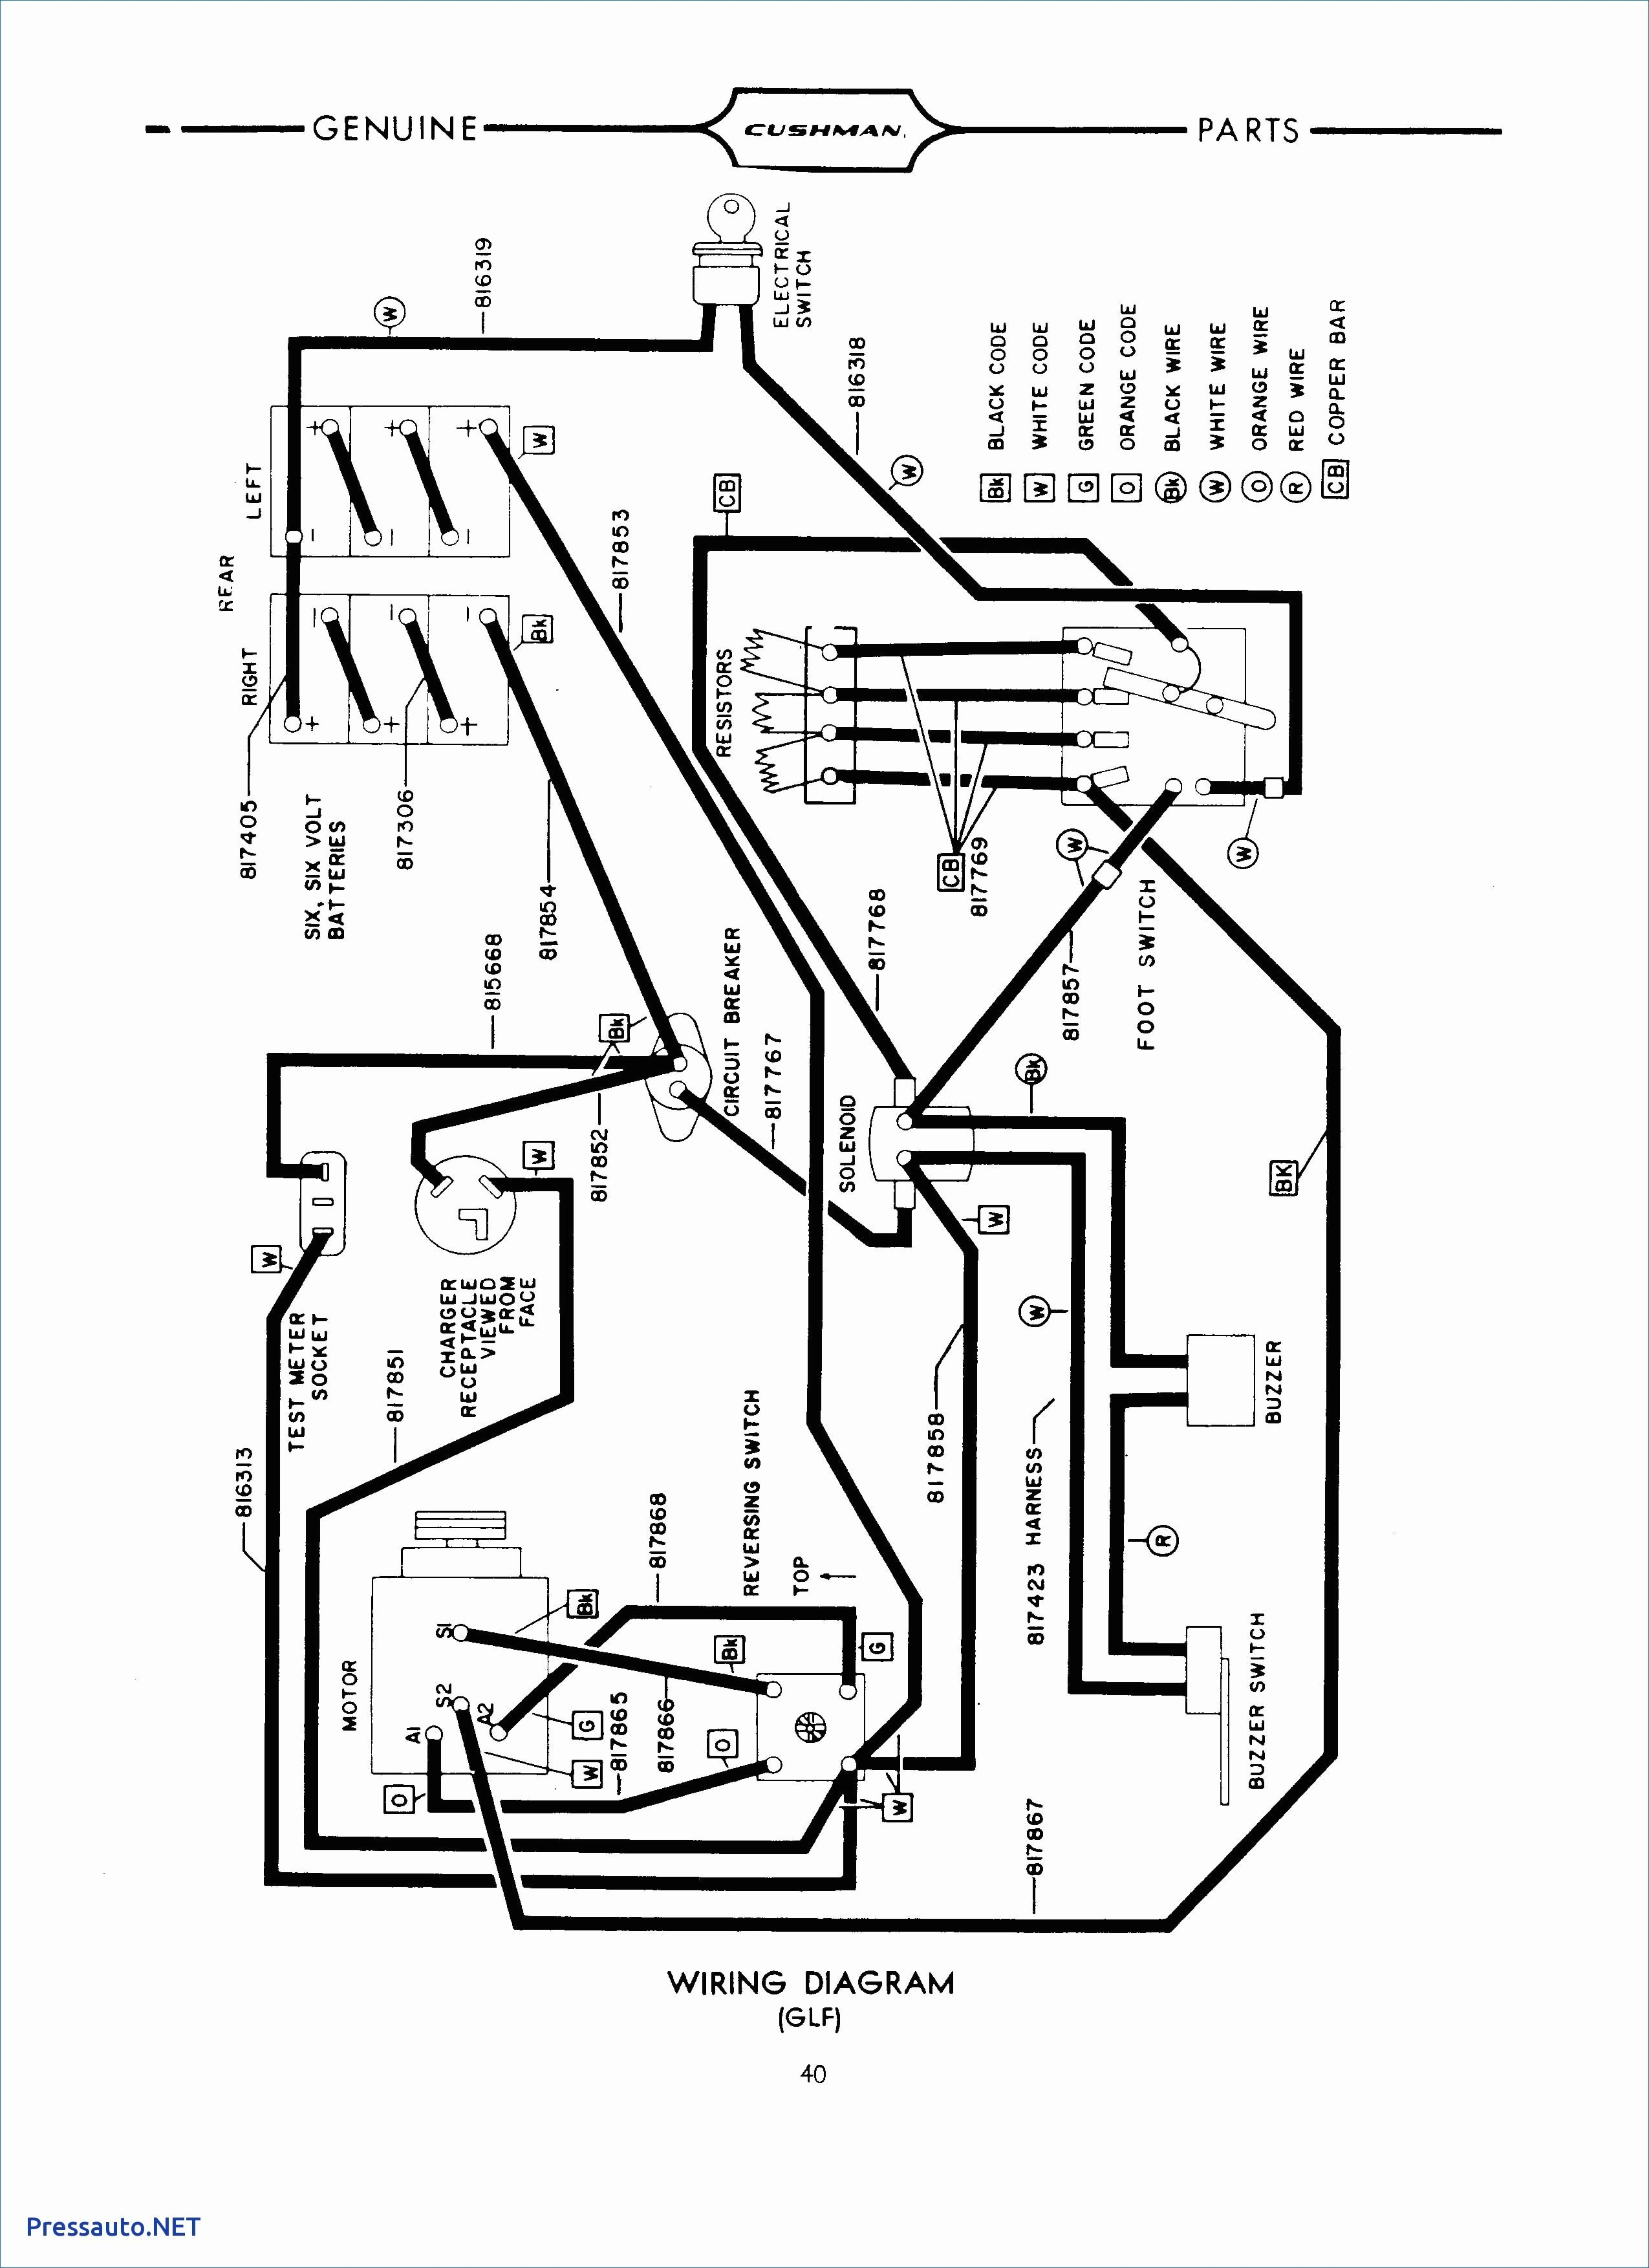 Wiring Diagram 48v Golf Cart New 36 Volt Wiring Diagram Wiring Diagrams Schematics